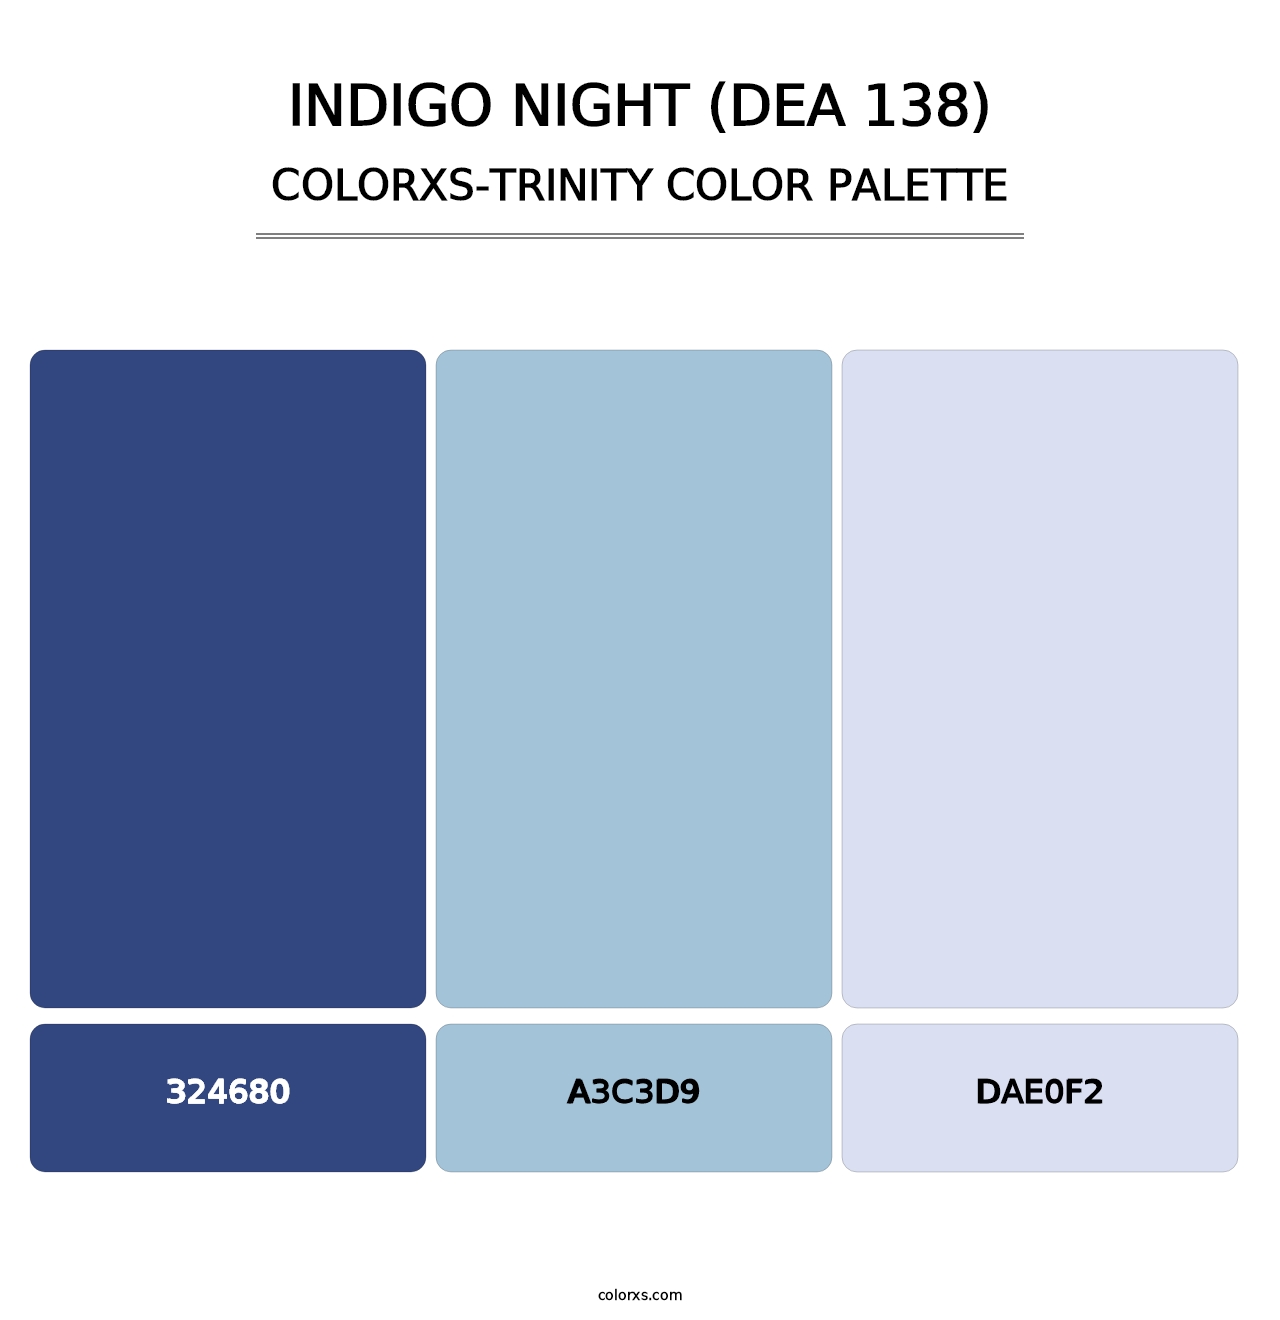 Indigo Night (DEA 138) - Colorxs Trinity Palette